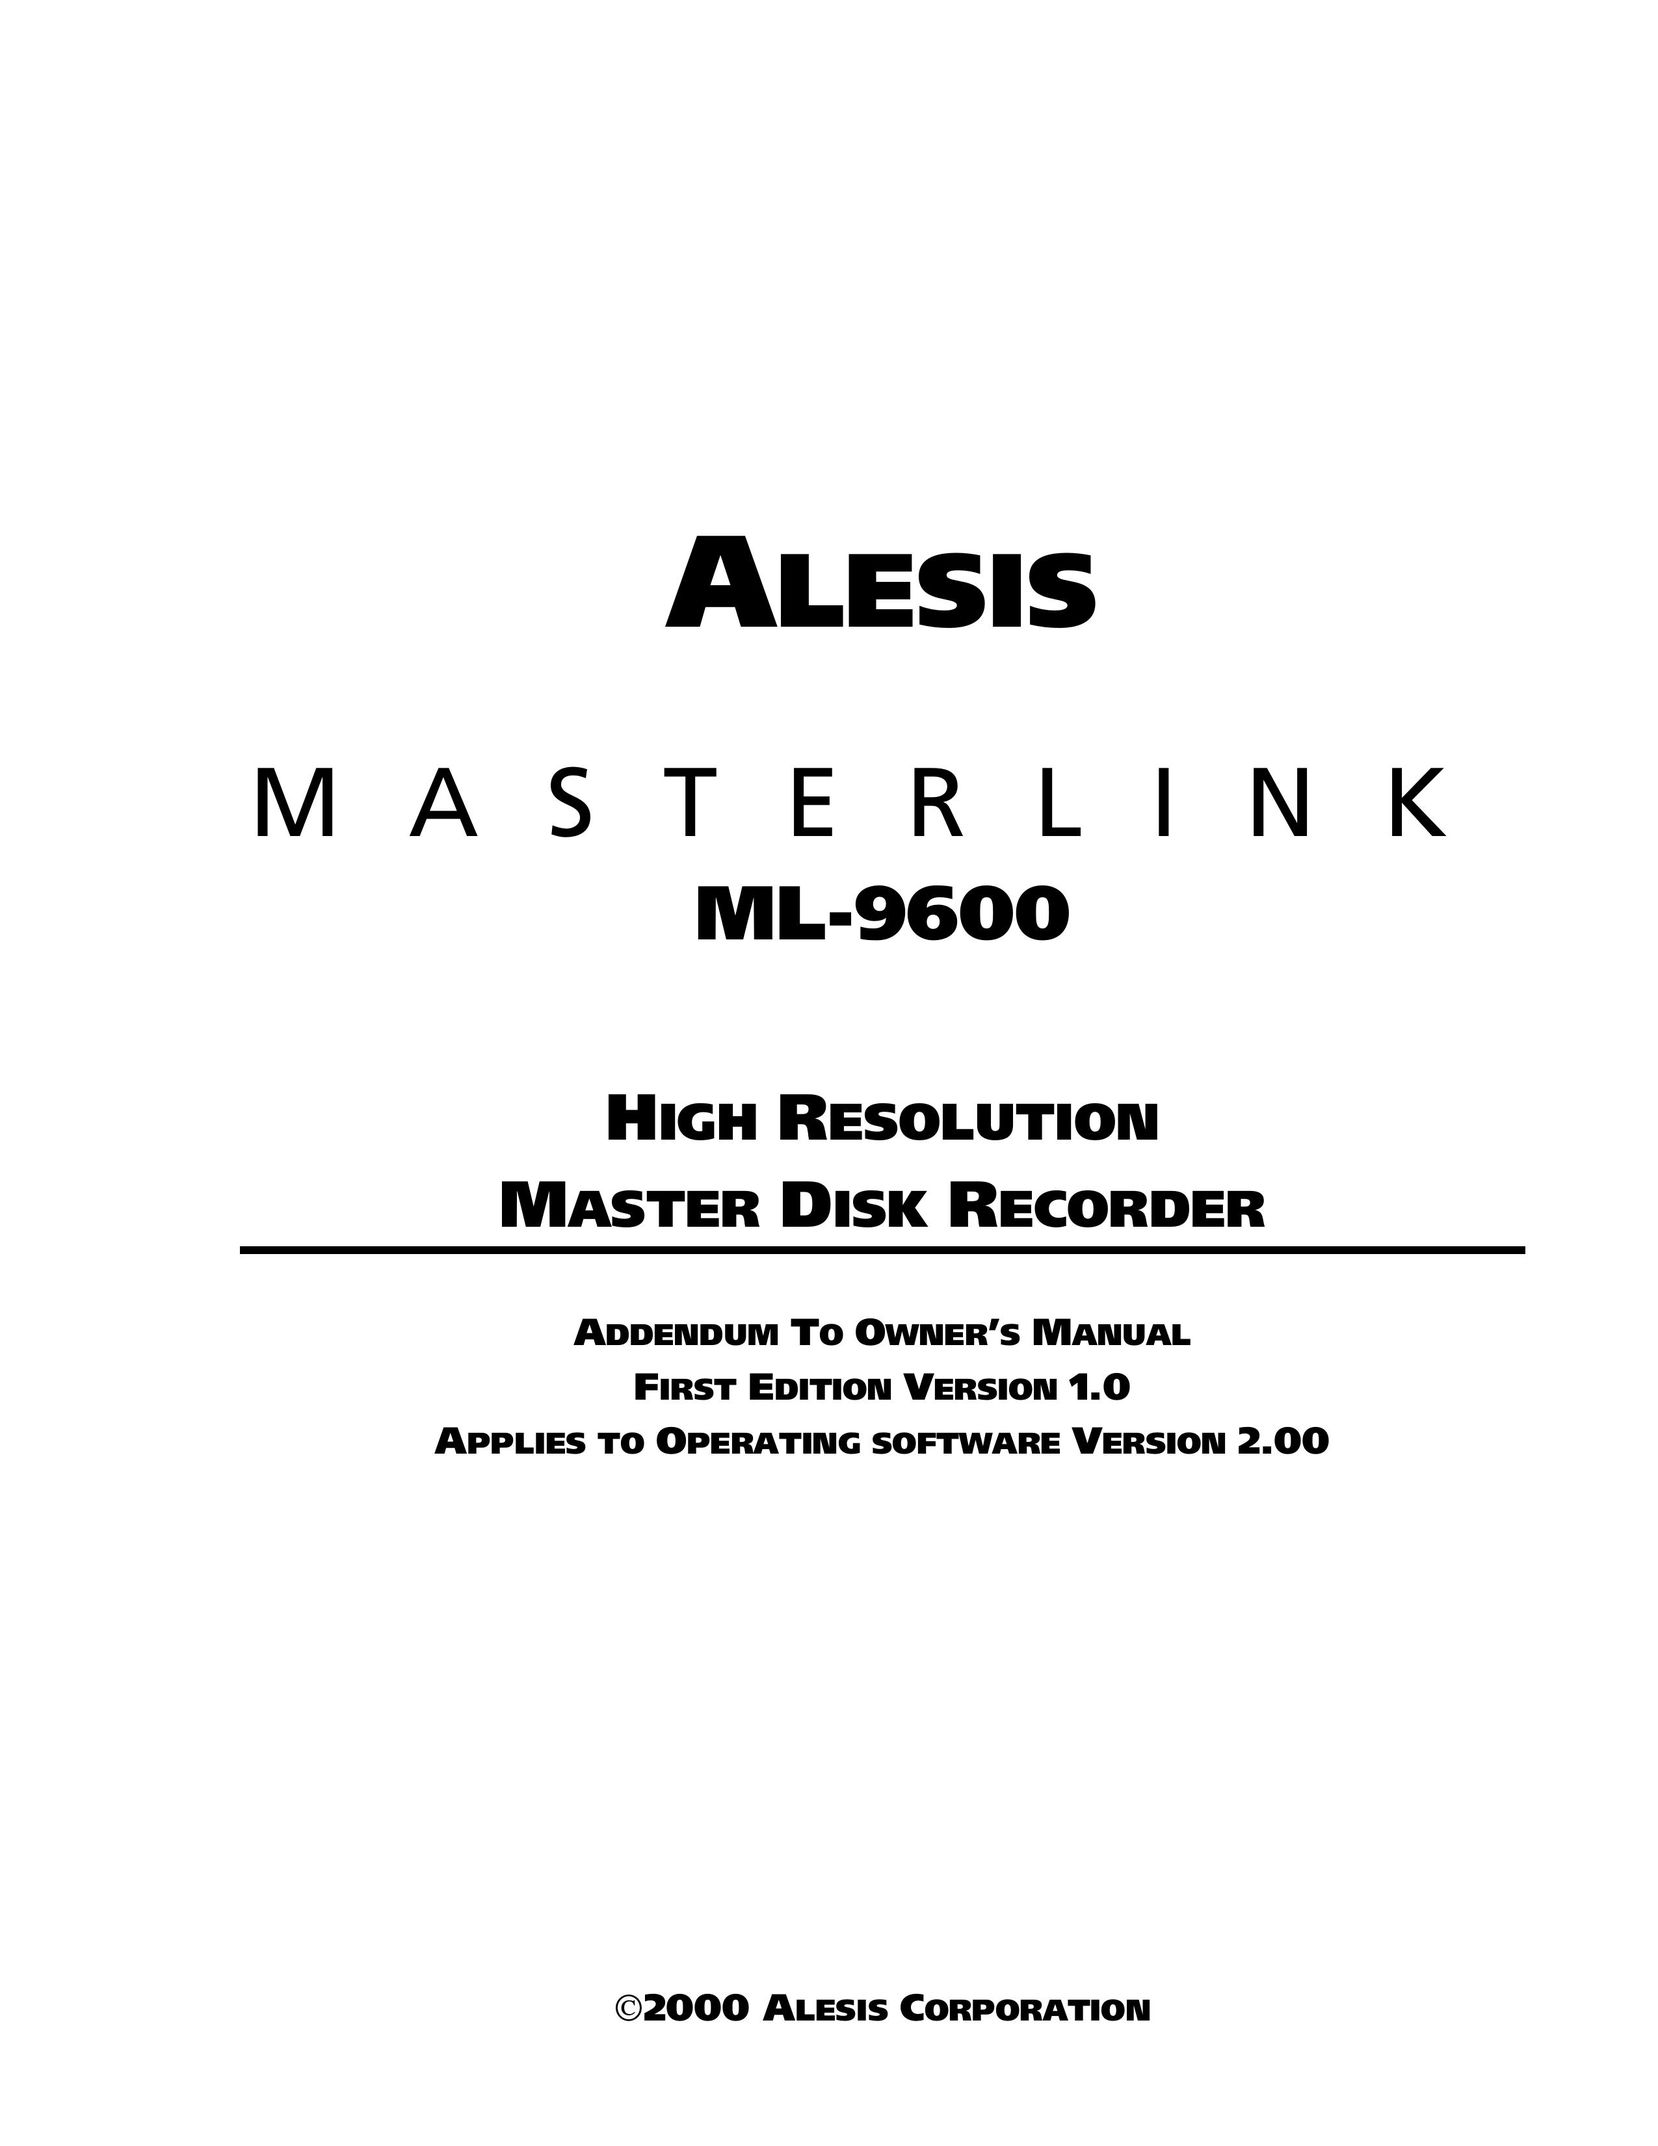 Alesis ML-9600 CD Player User Manual